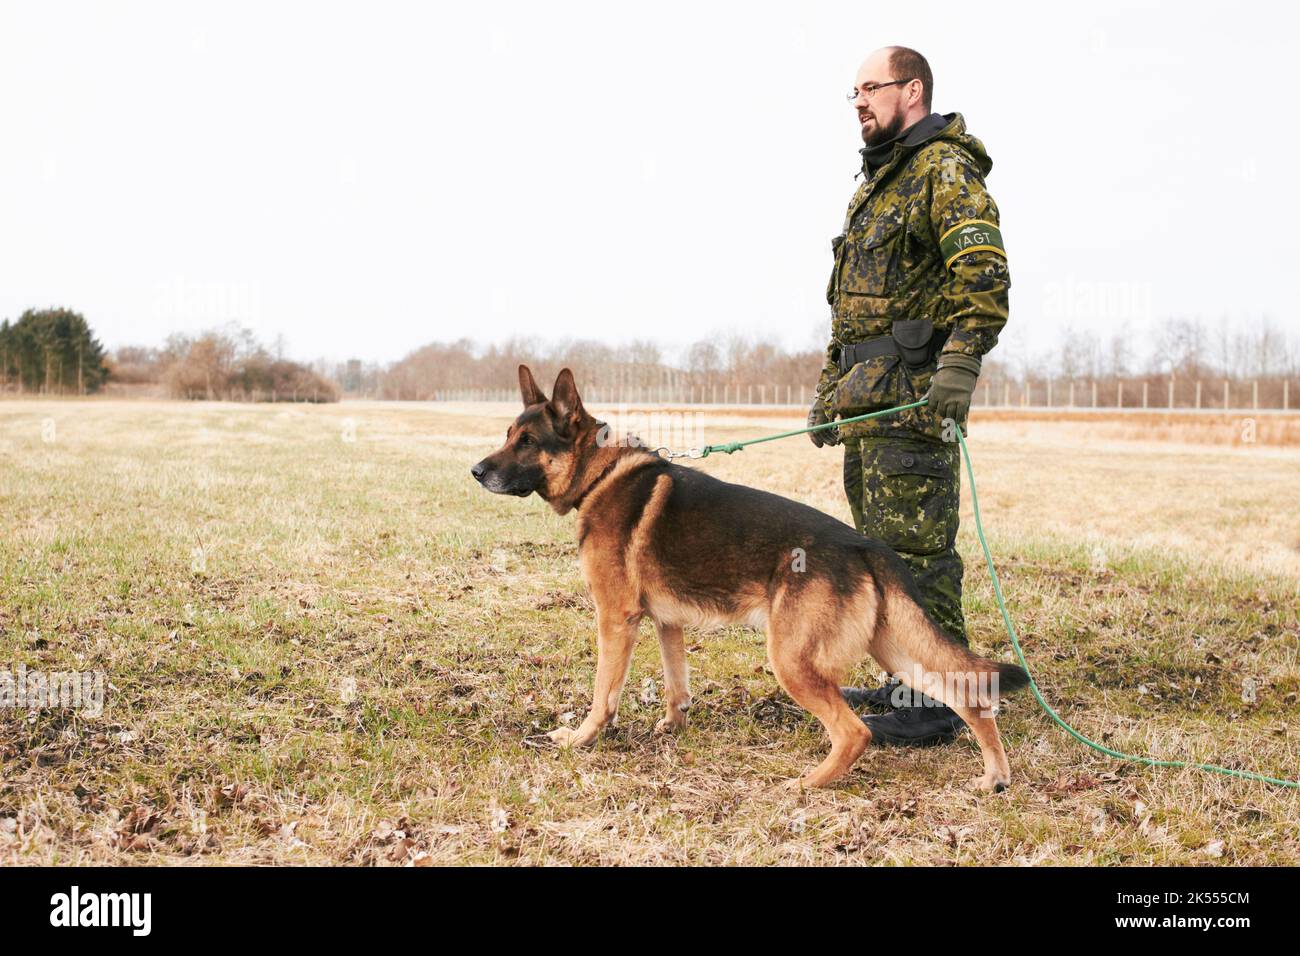 Seinem Meister dabei zu helfen, die Nation zu beschützen. Ein Soldat, der mit seinem Hund auf einem Feld steht. Stockfoto